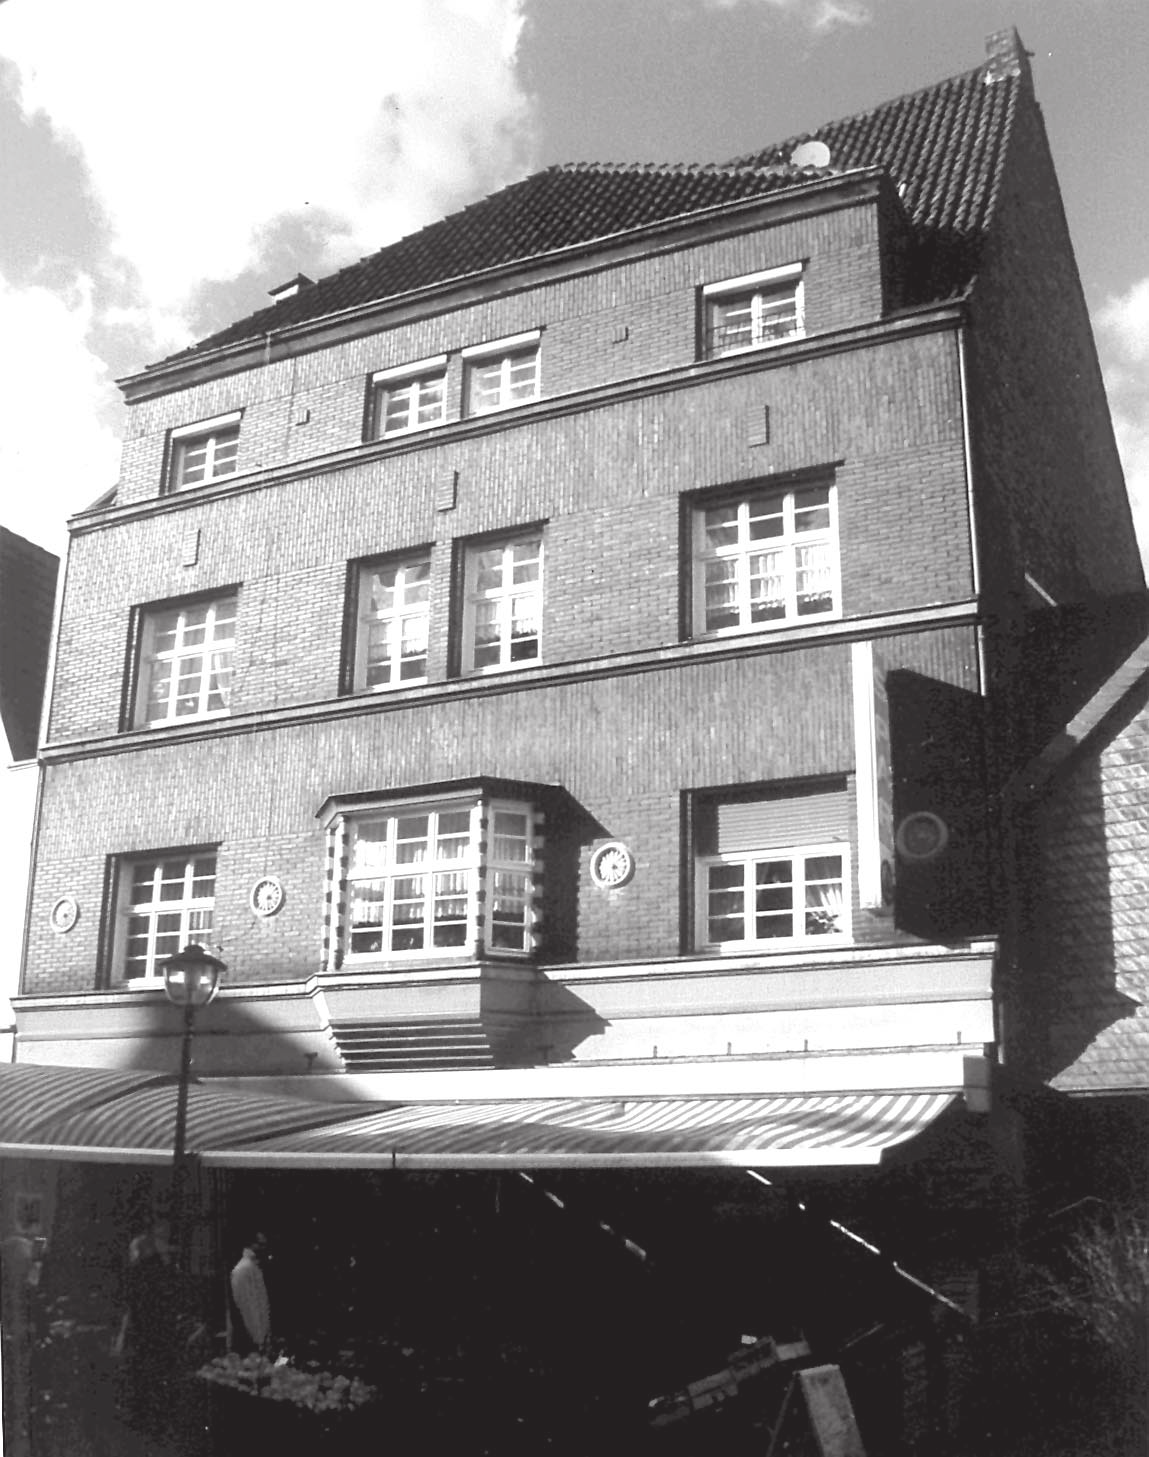 1966 Umbau des Ladenlokals.